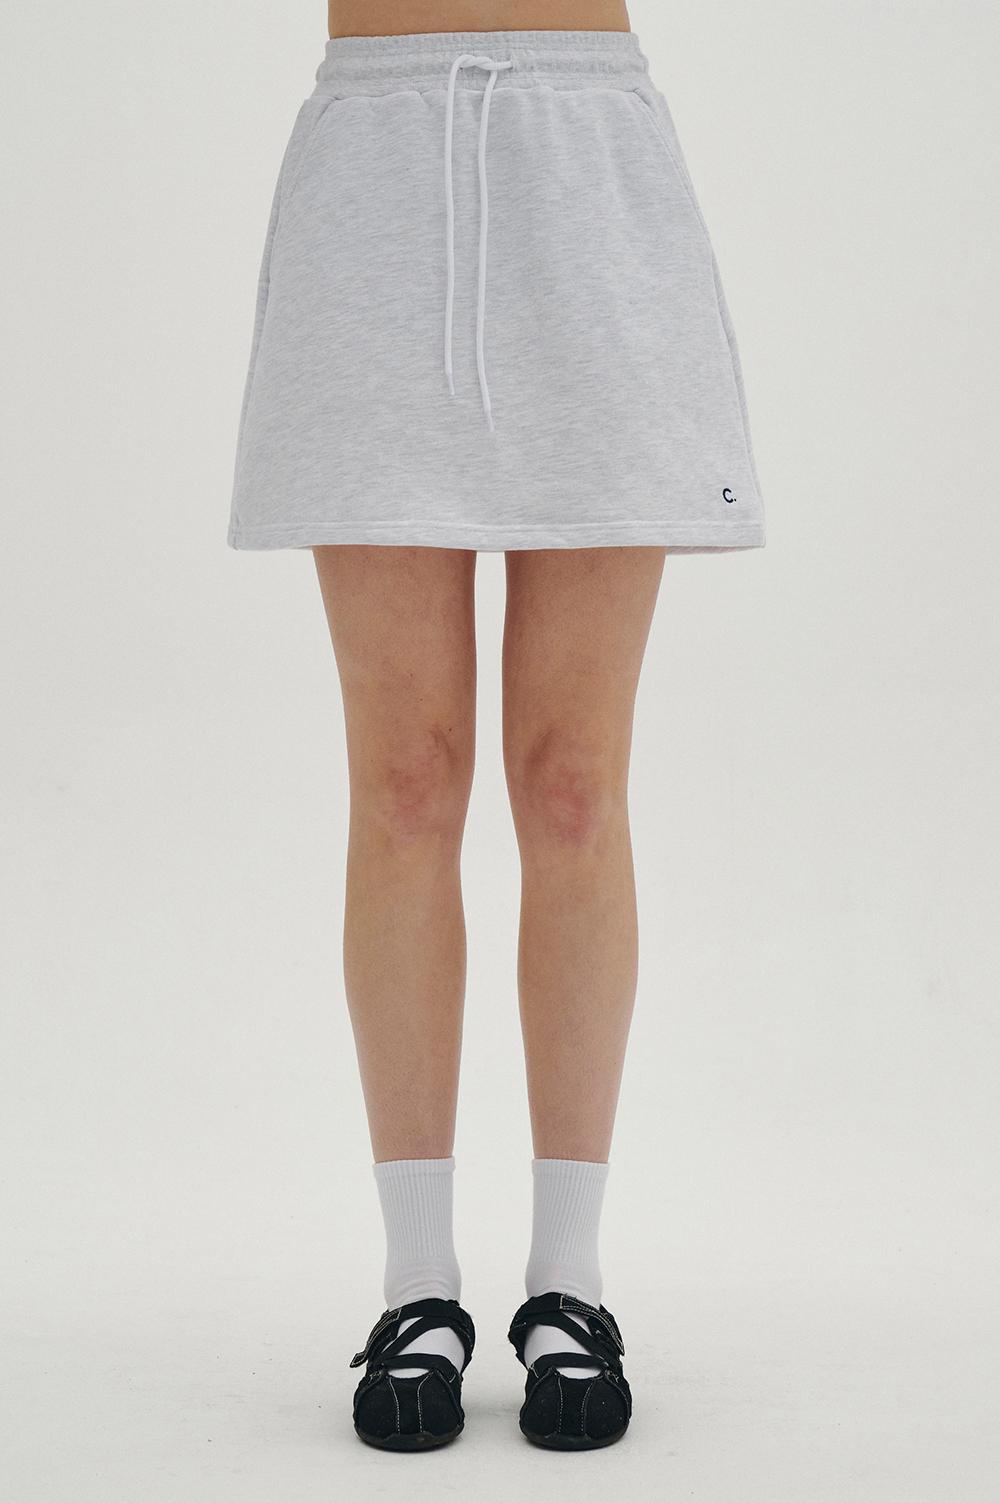 clove - New Active Skirt (Light Grey)